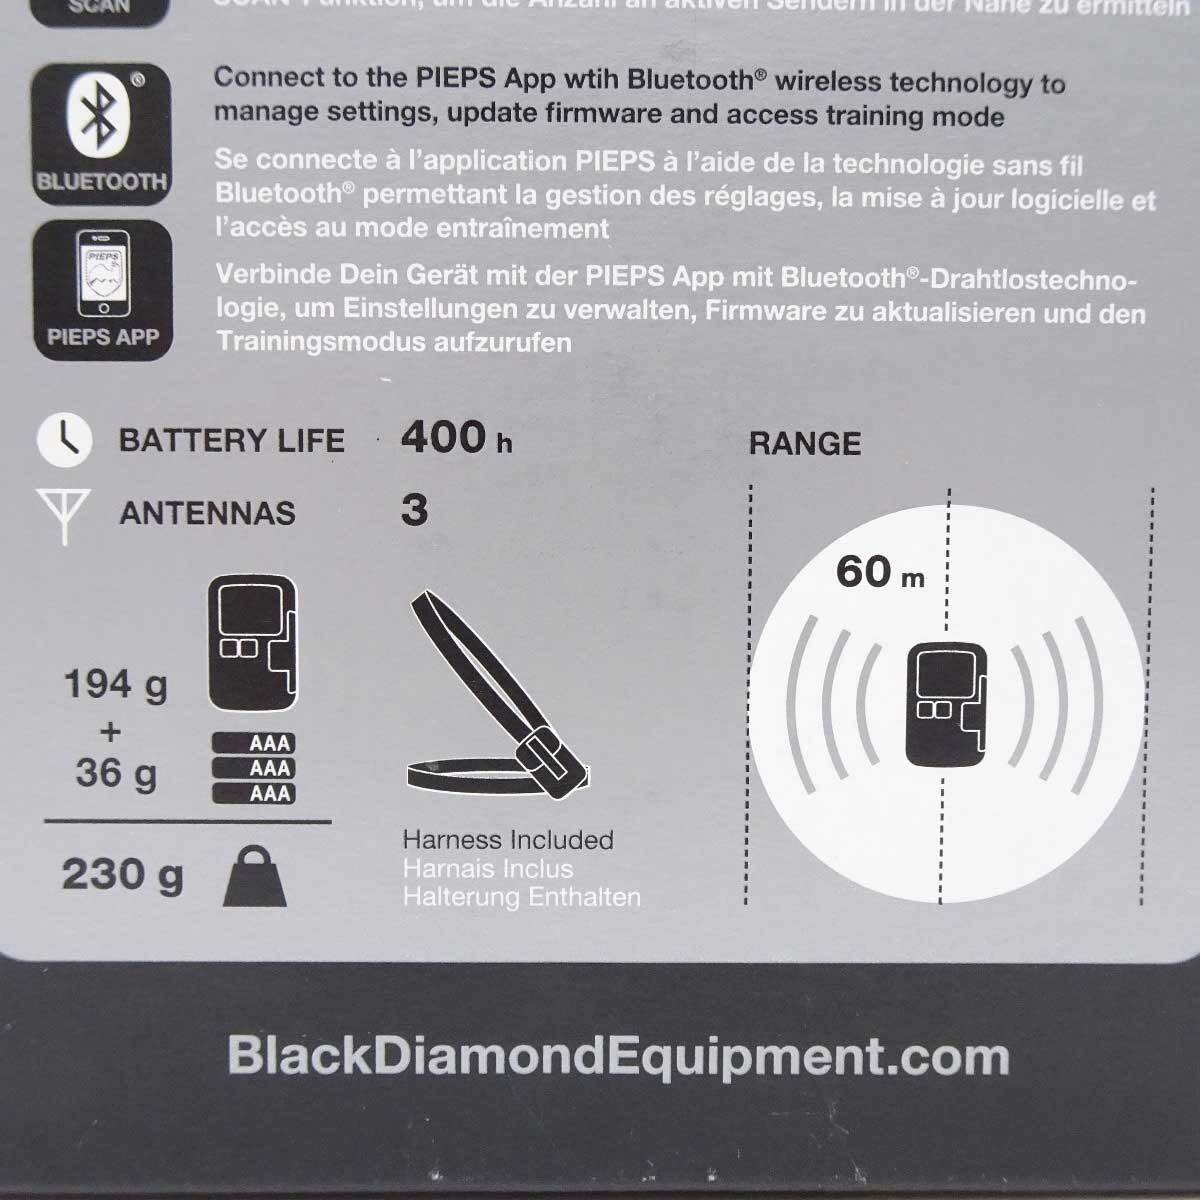 【 подержанный товар  *   неиспользованный товар  】 черный  алмаз   руководство  BT GUIDE BT ... BD43800 BlackDiamond  Avalanche  Gear   ... ...